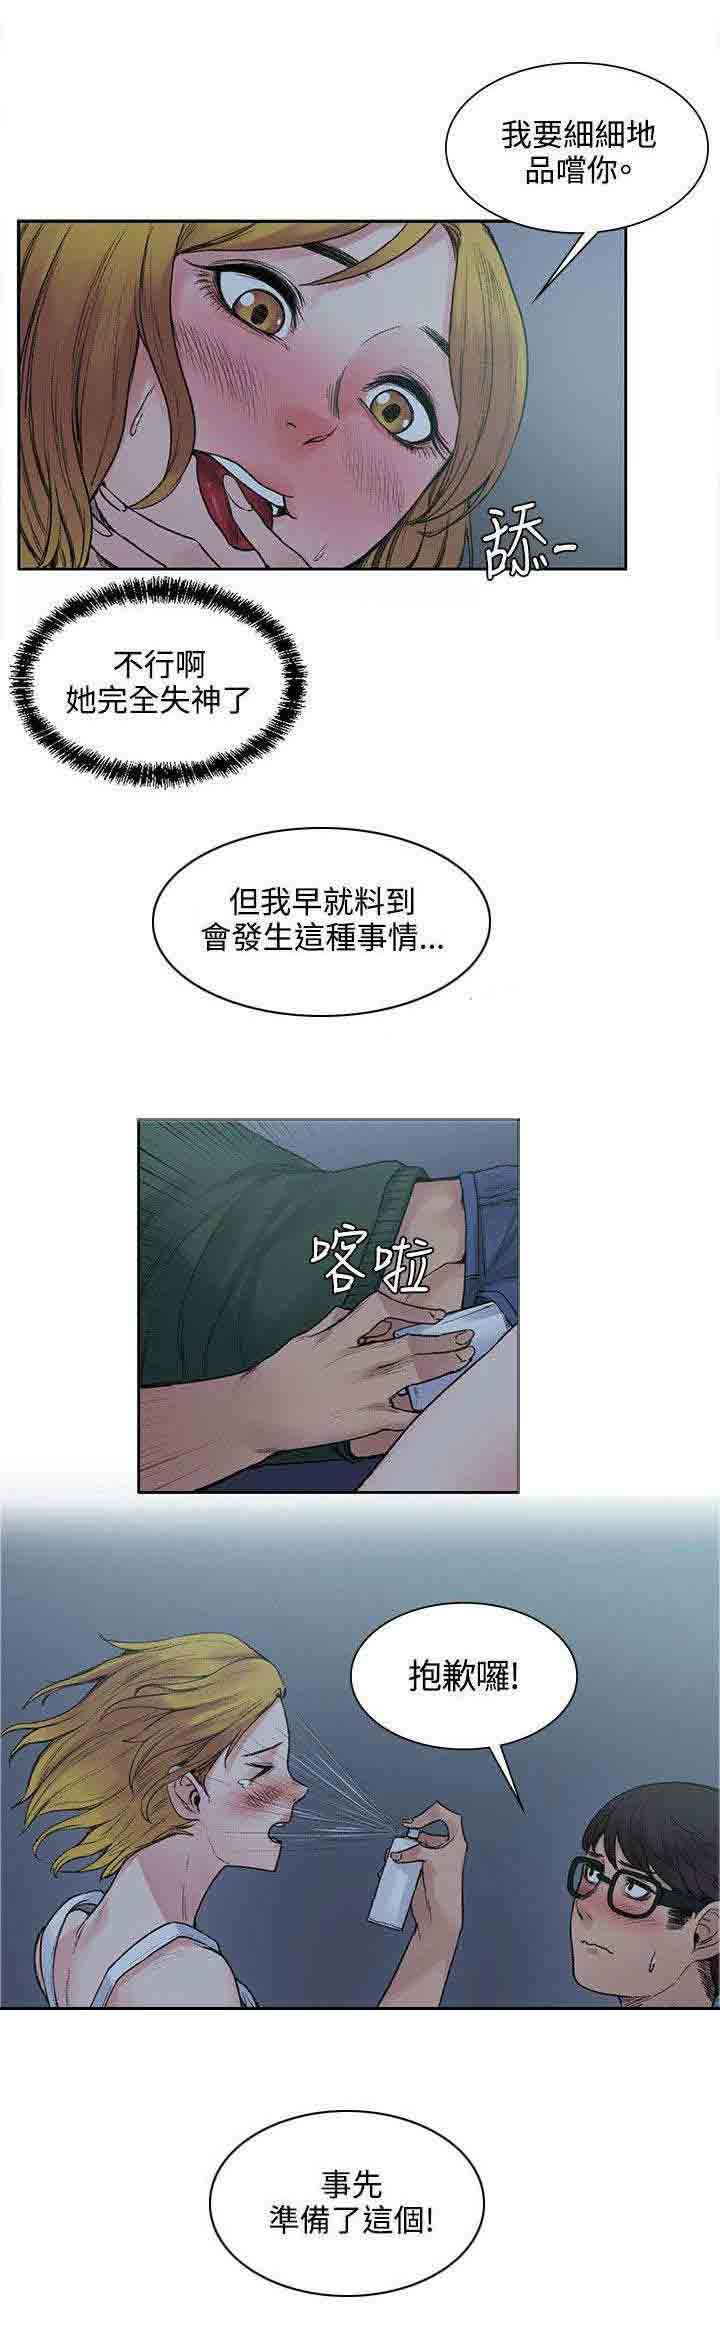 韩国污漫画 甜蜜的香氣 第26话失败品 9